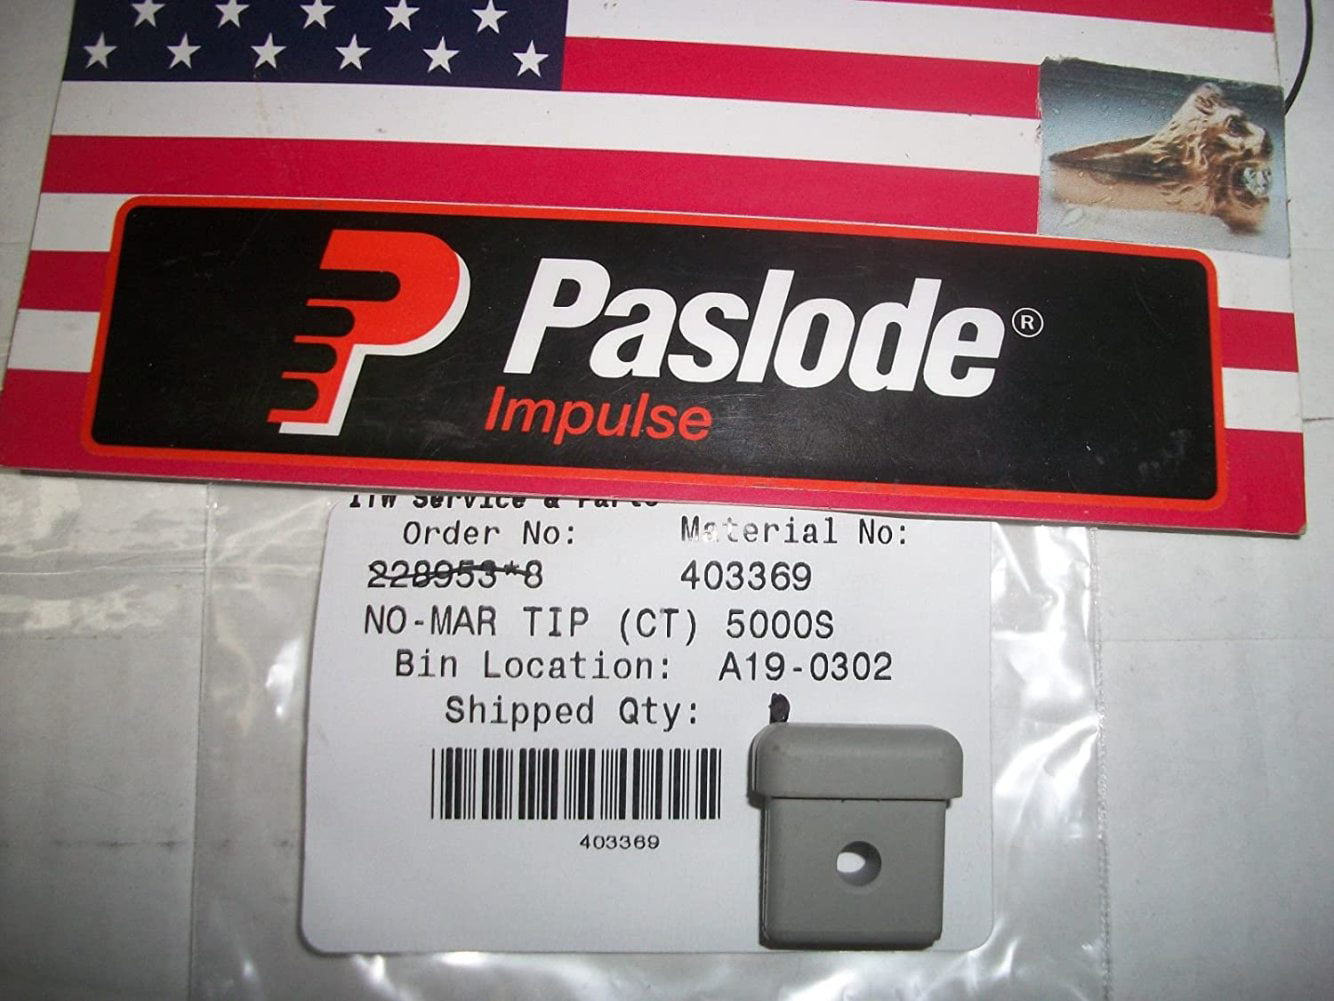 Paslode Part # 900286 900420, 902200, 902600 framers Spark Plug Assembly 